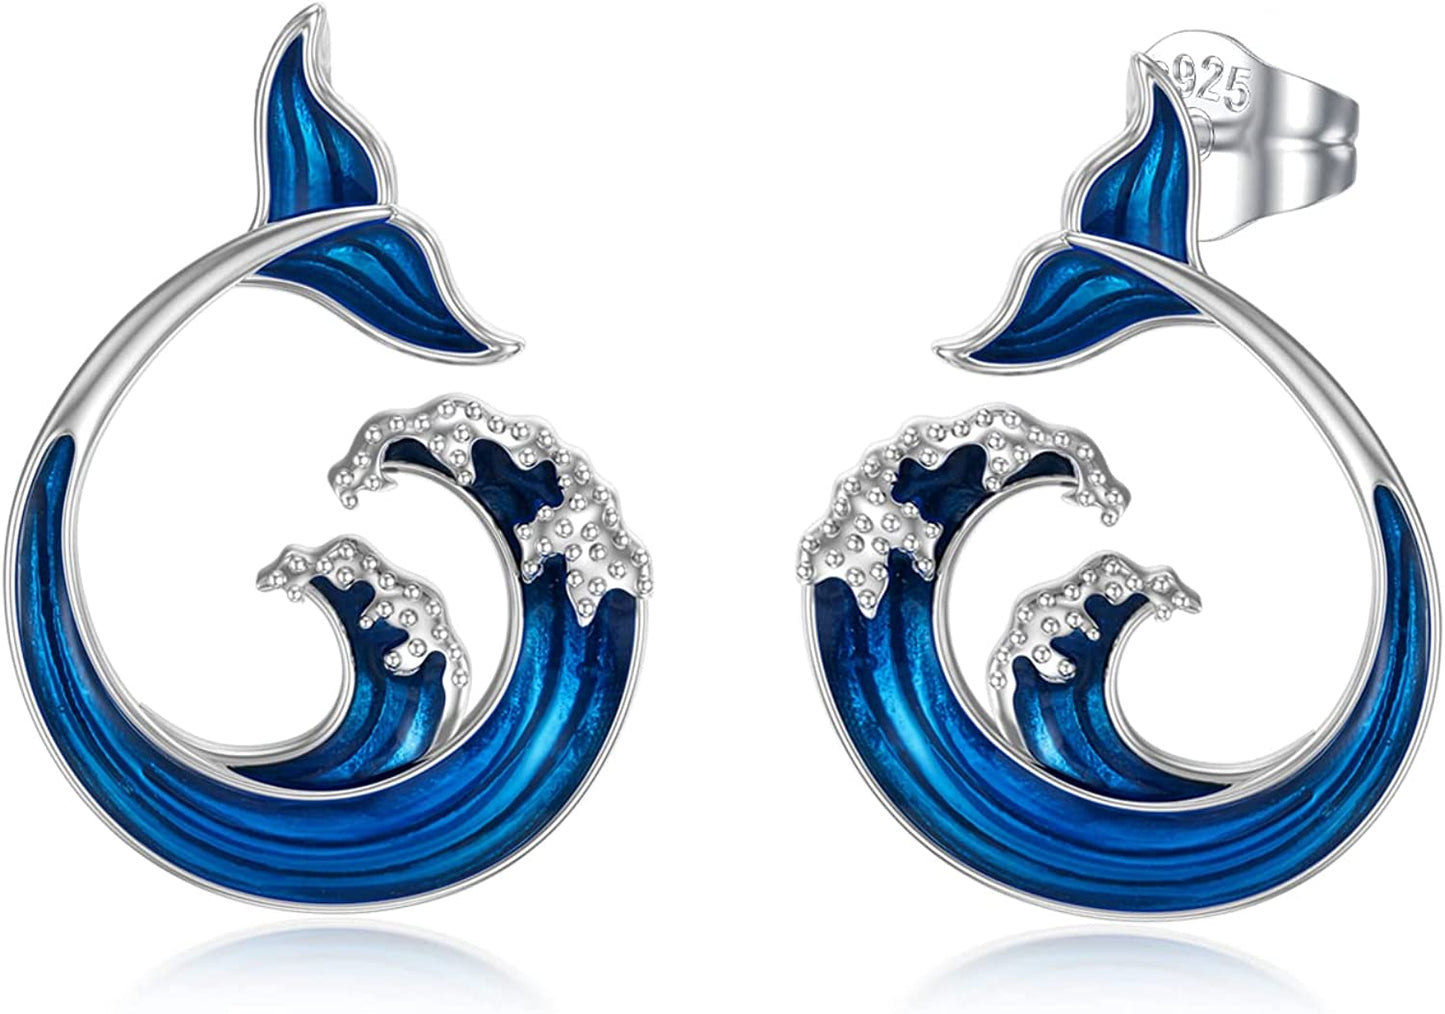 Cat/Ocean Studs Earrings S925 Sterling Silver Hypoallergenic Stud Earrings for Women Girlfriend Teens Lovers